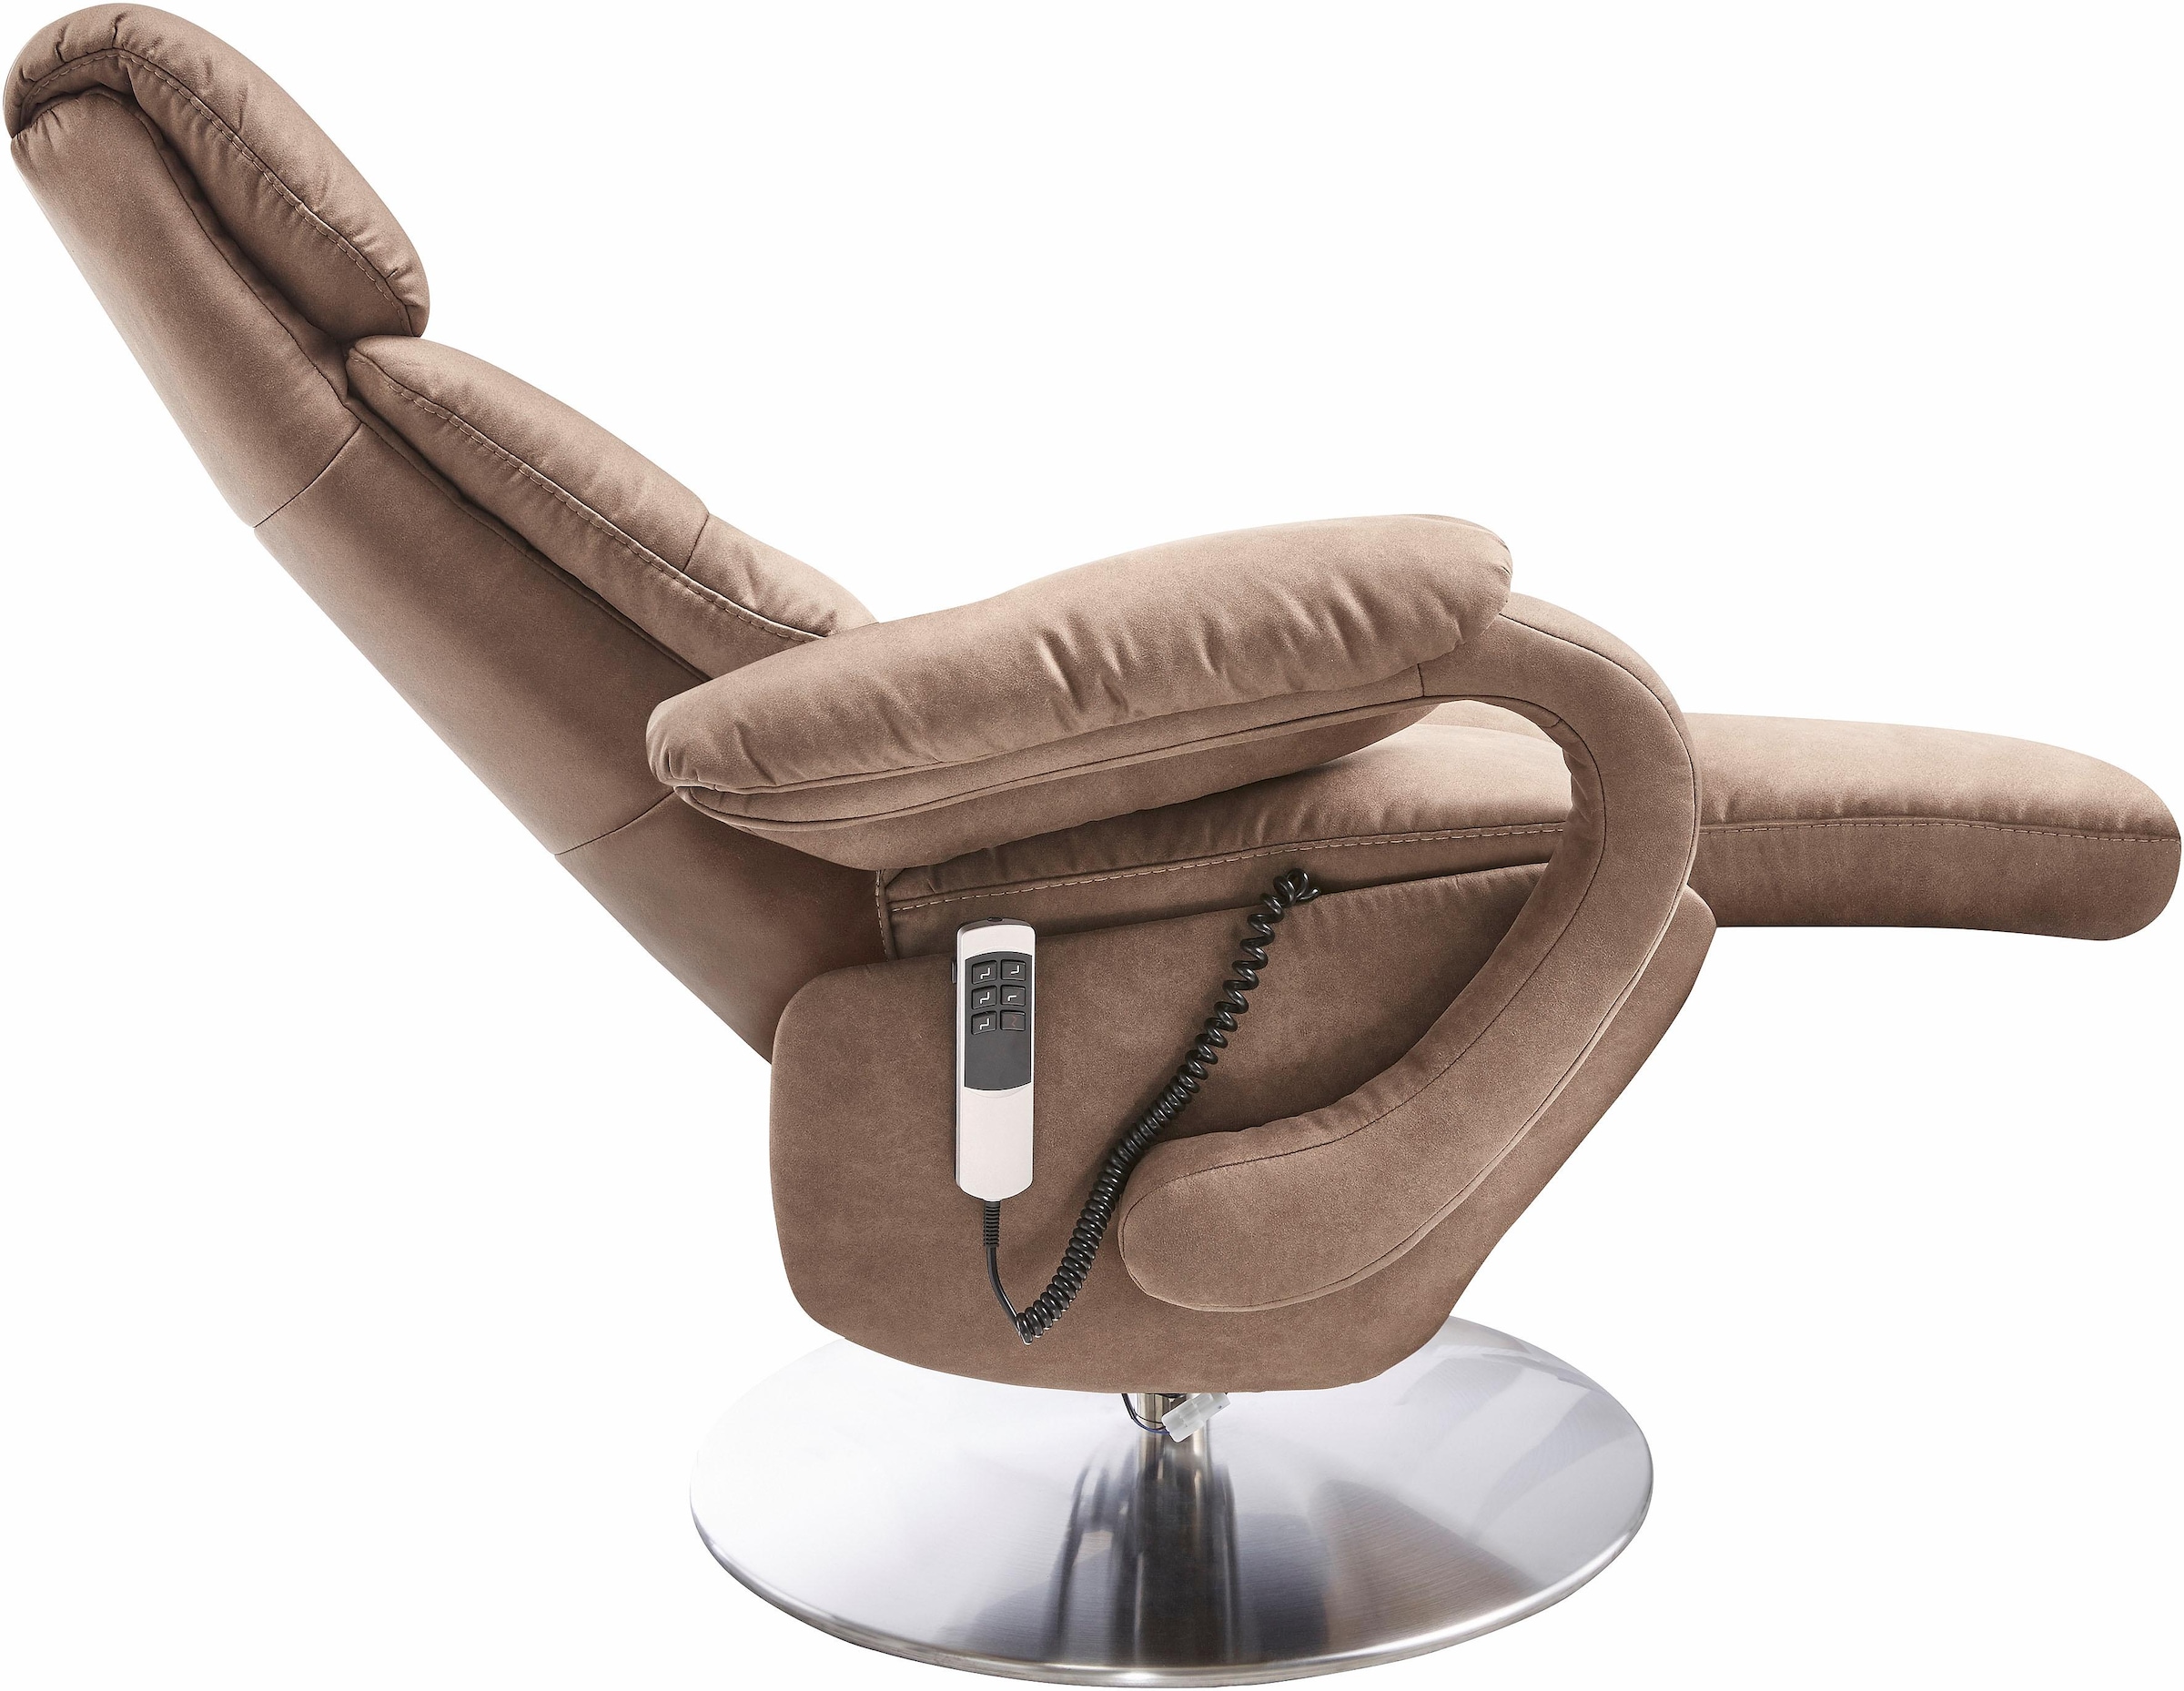 sit&more TV-Sessel »Invito«, in Grösse S, wahlweise mit Motor und Aufstehhilfe